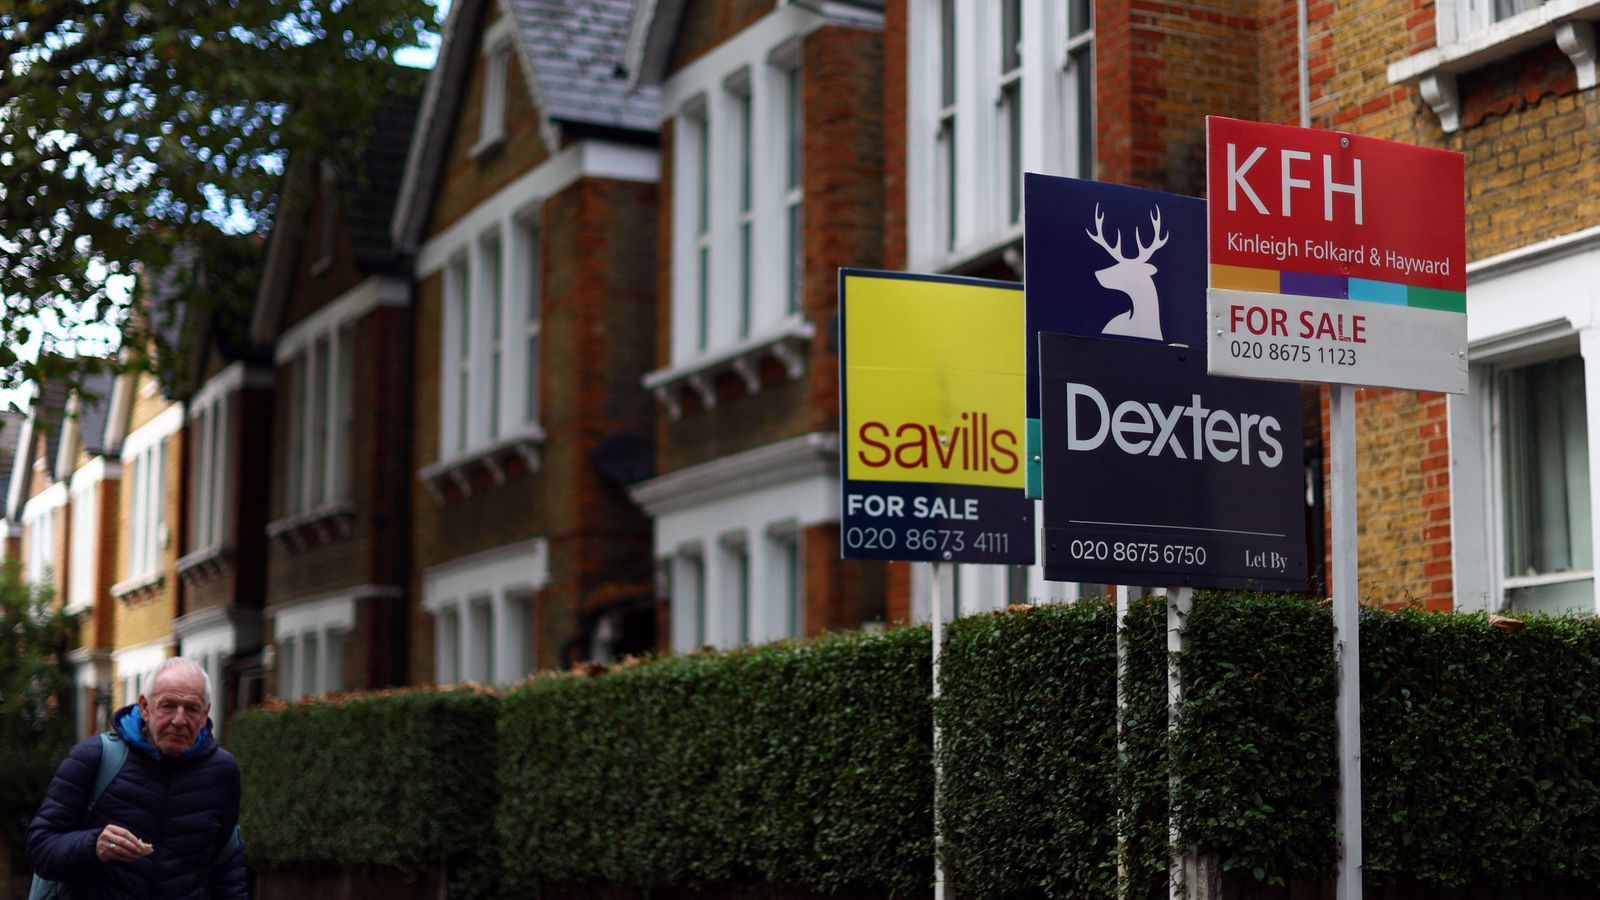 Les prix de l’immobilier au Royaume-Uni subissent la plus forte baisse annuelle depuis 2009 |  Actualité économique